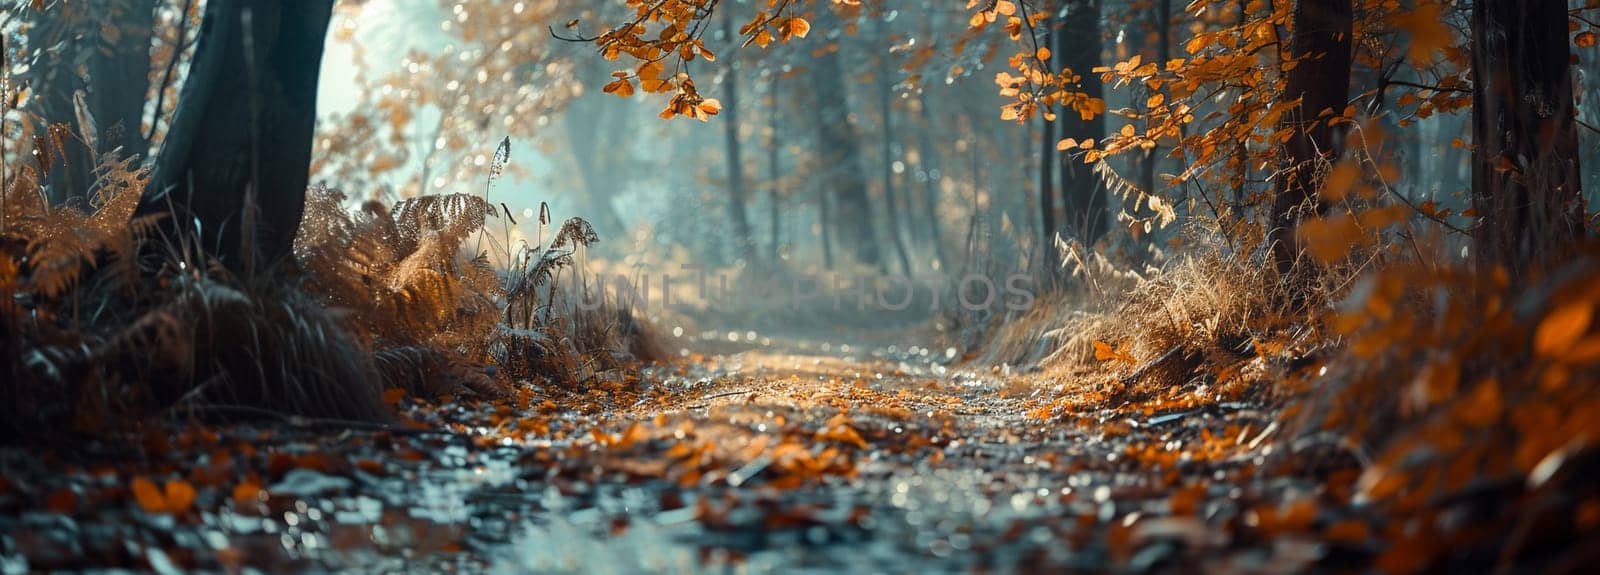 Golden autumn forest path in serene landscape background design by Yevhen89